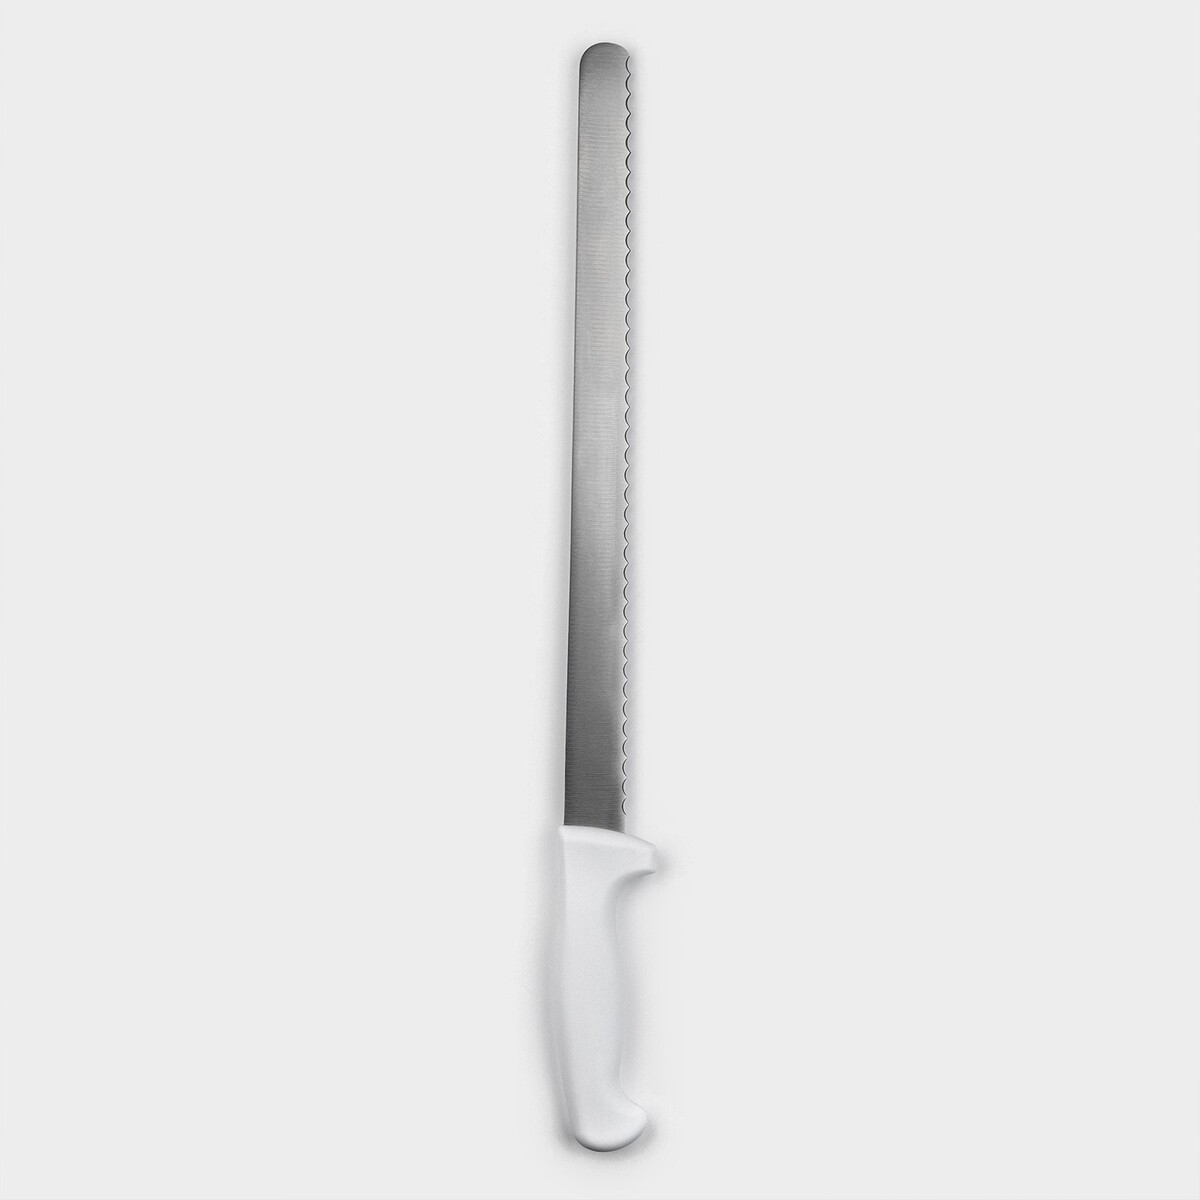 Нож для бисквита, рабочая поверхность 34 см, крупные зубчики нож для бисквита ровный край ручка пластик рабочая поверхность 30 см